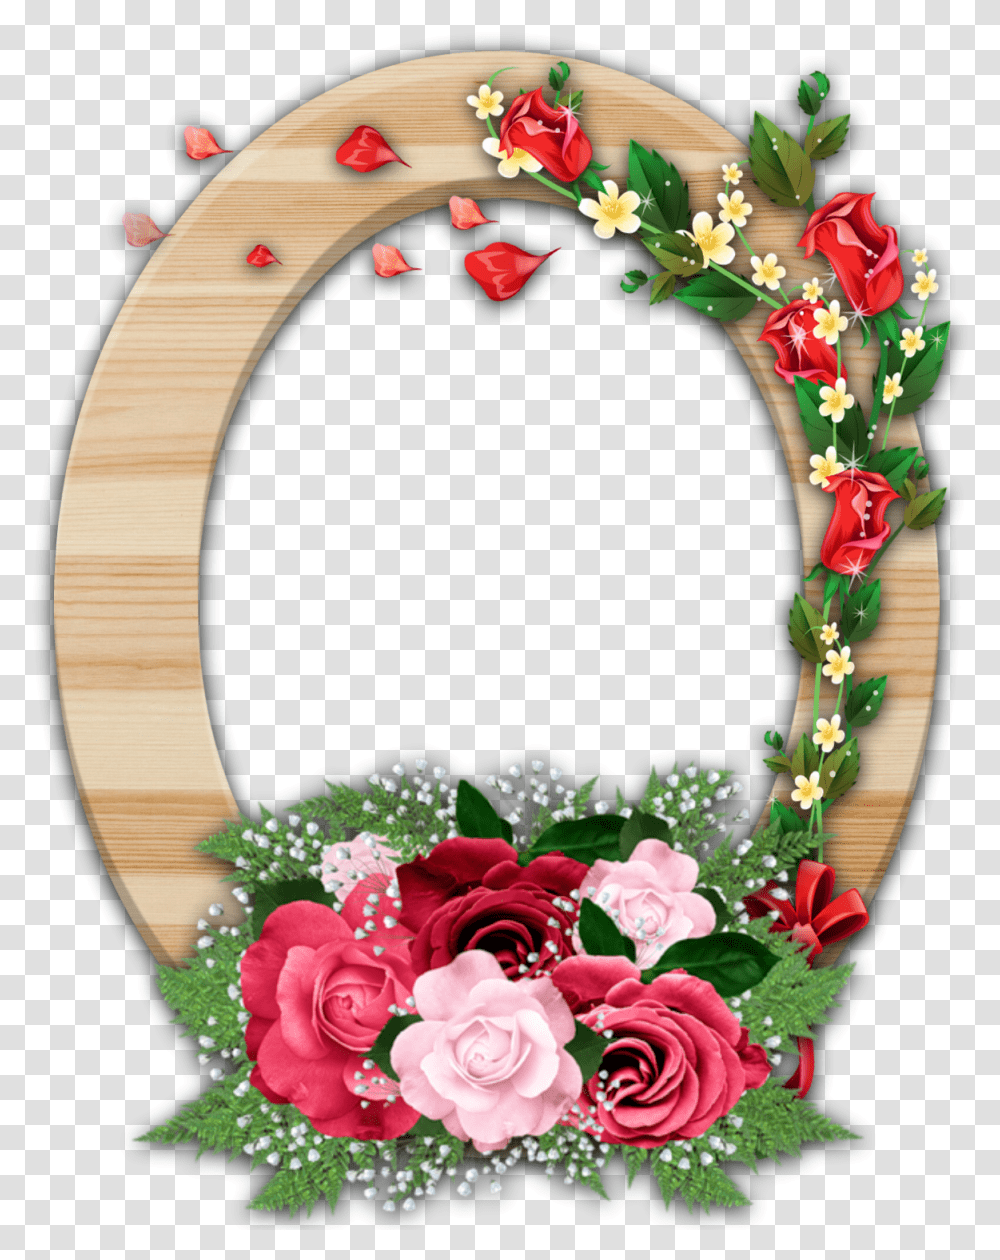 Floral Frame Flower Border Frames Hd Download Flower Frame, Plant, Blossom, Birthday Cake, Food Transparent Png